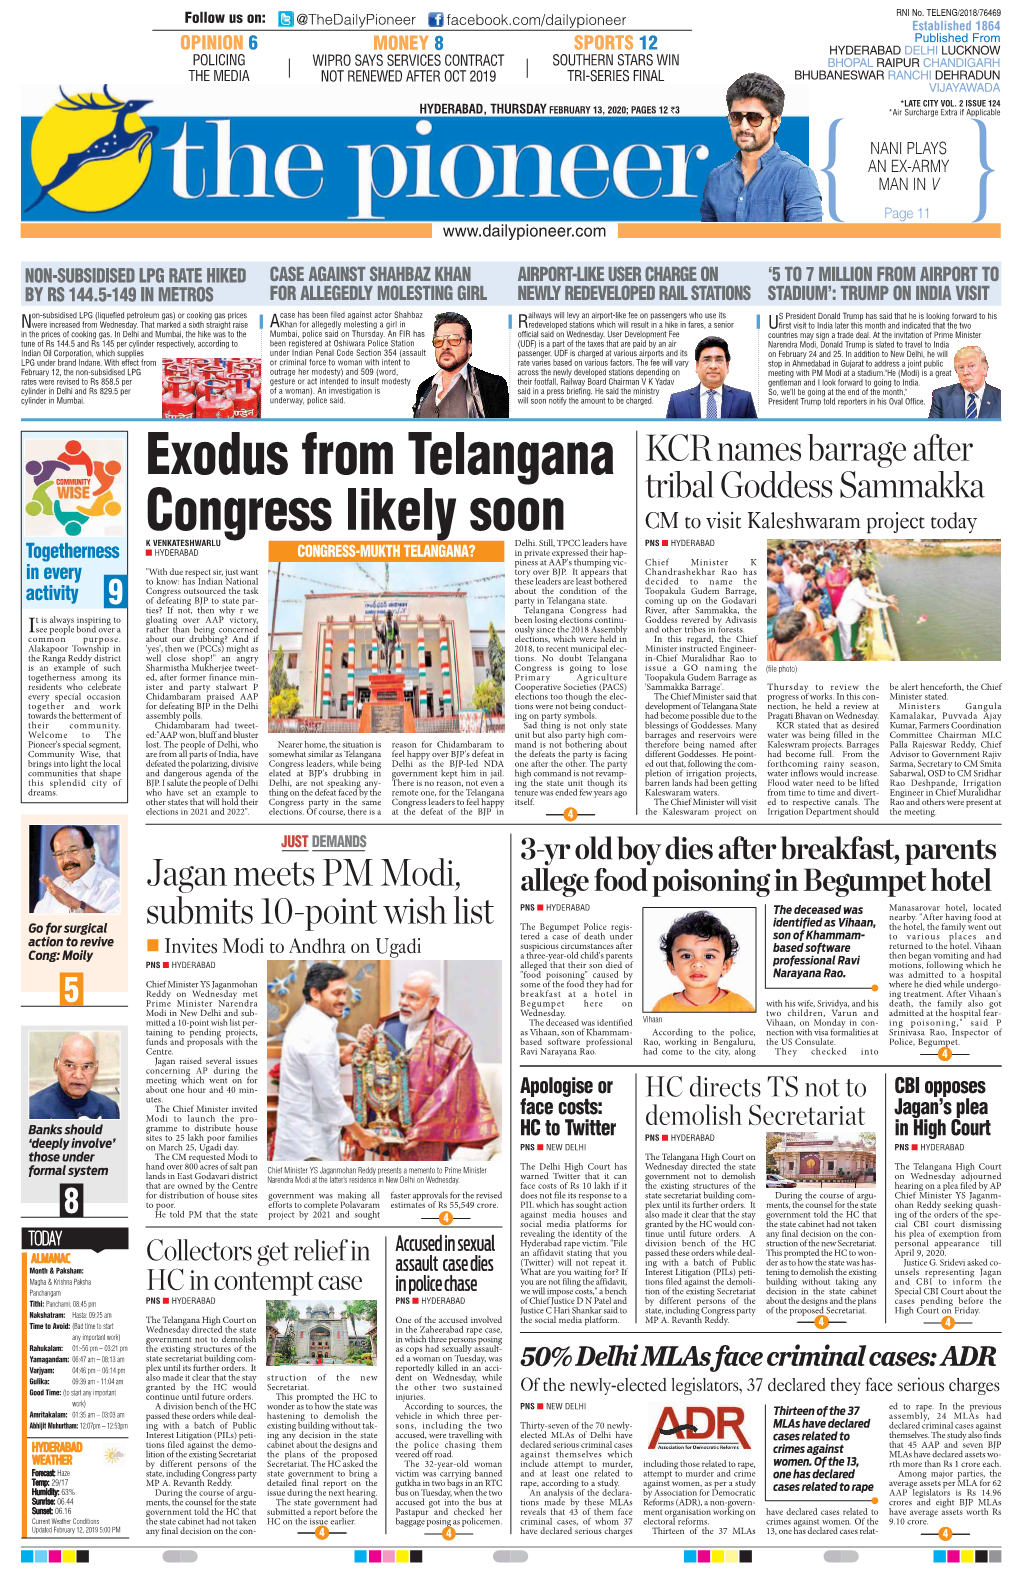 Exodus from Telangana Congress Likely Soon